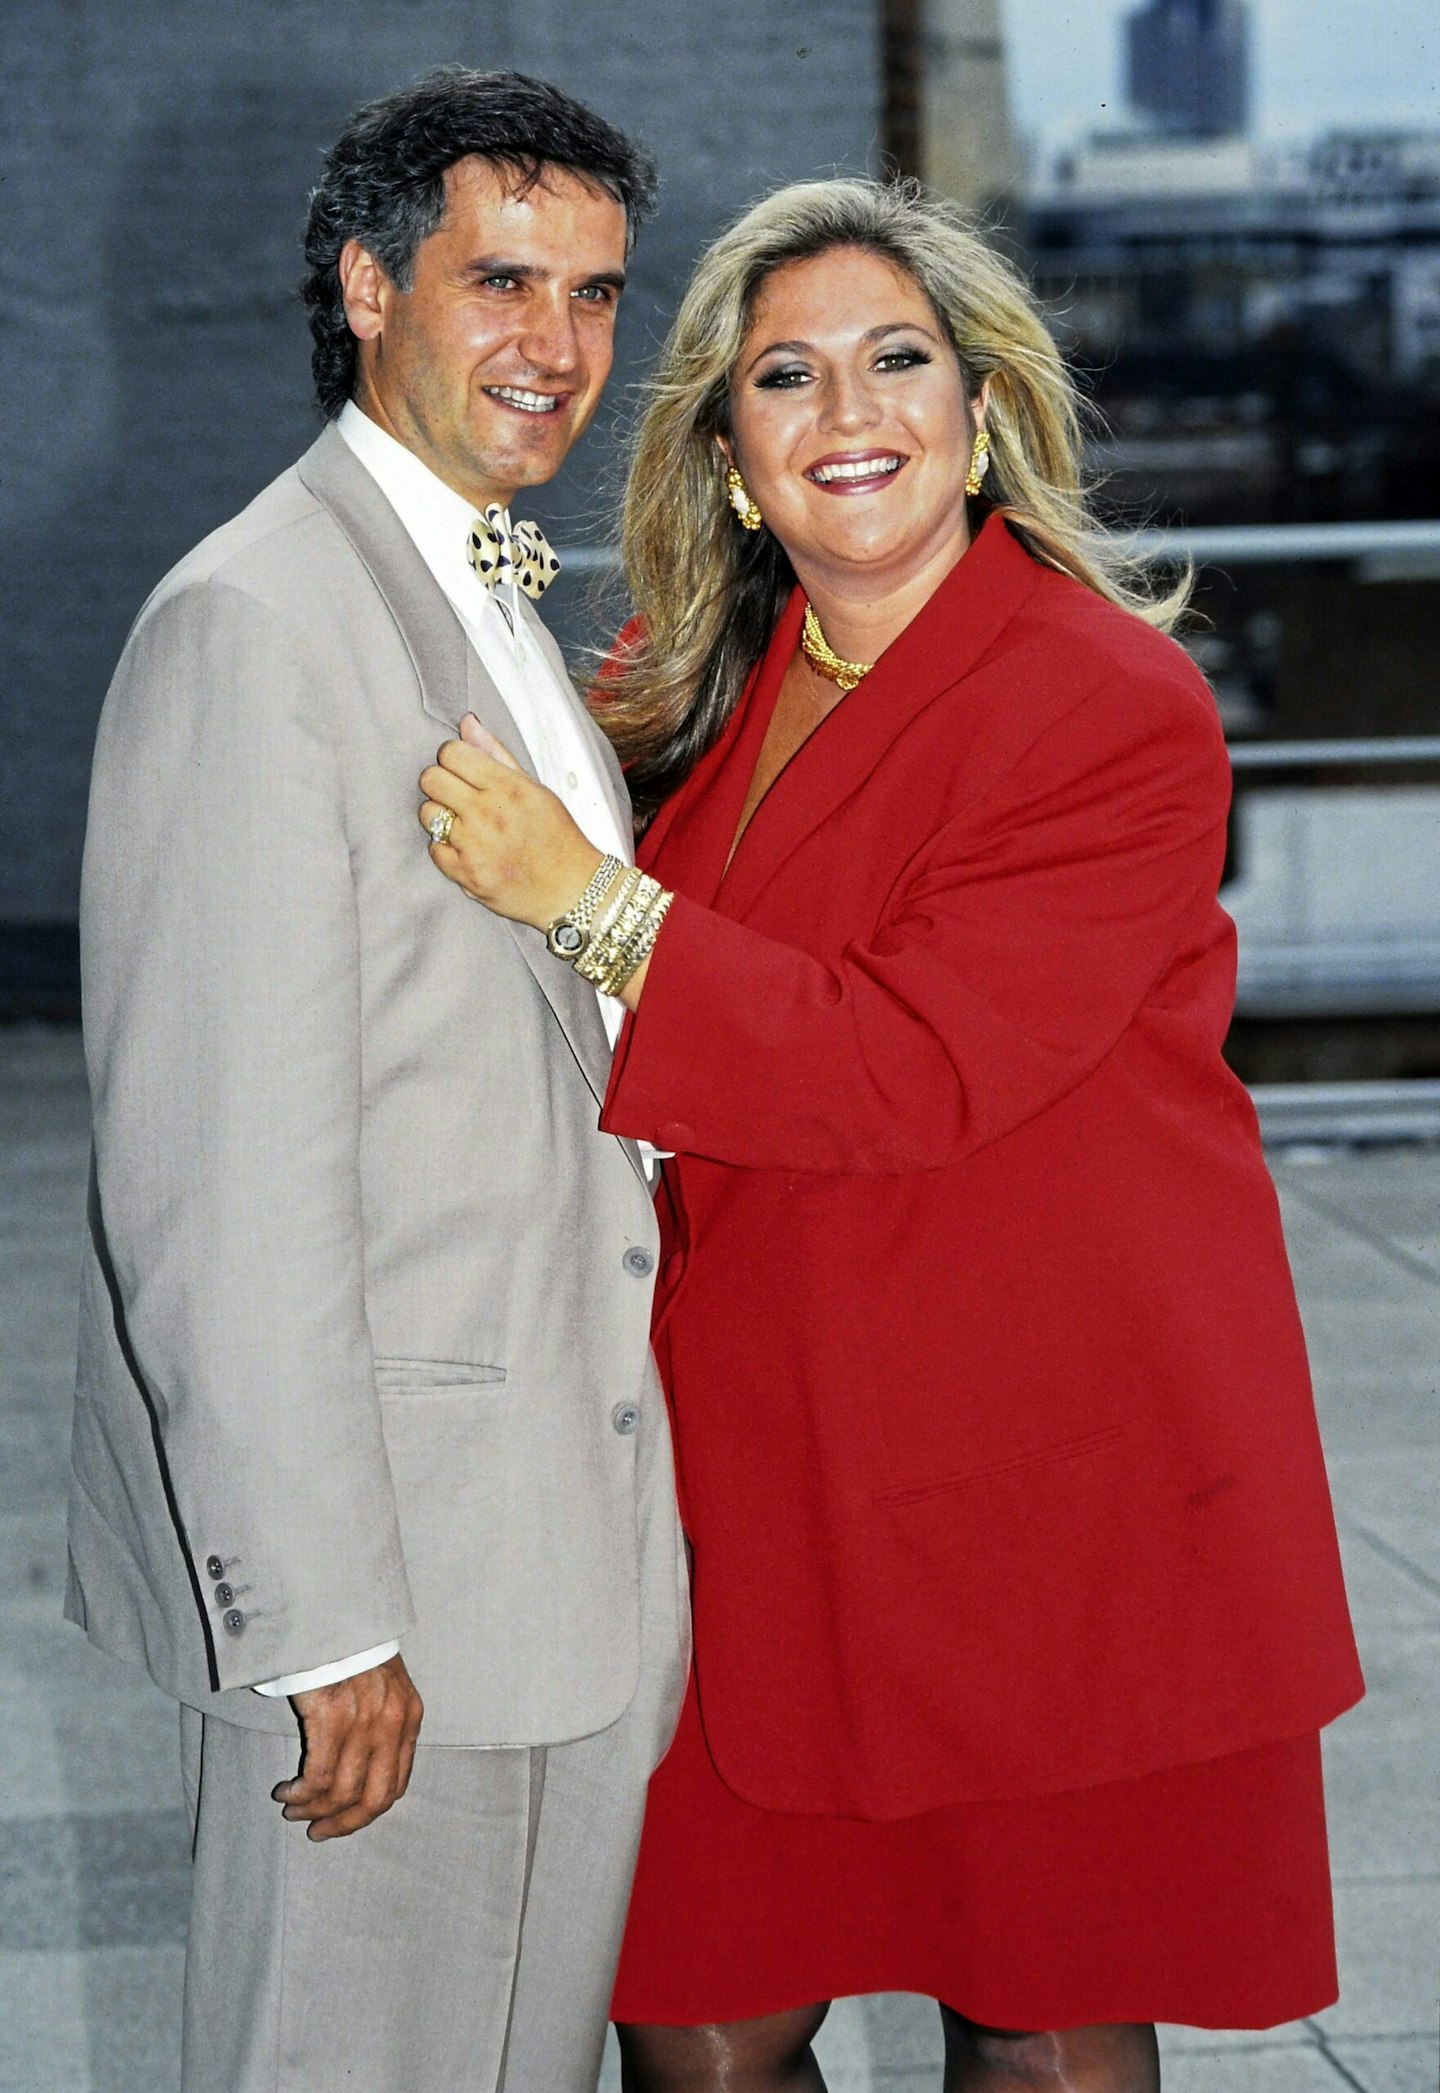 Vanessa Feltz and her ex husband Michael Kurer